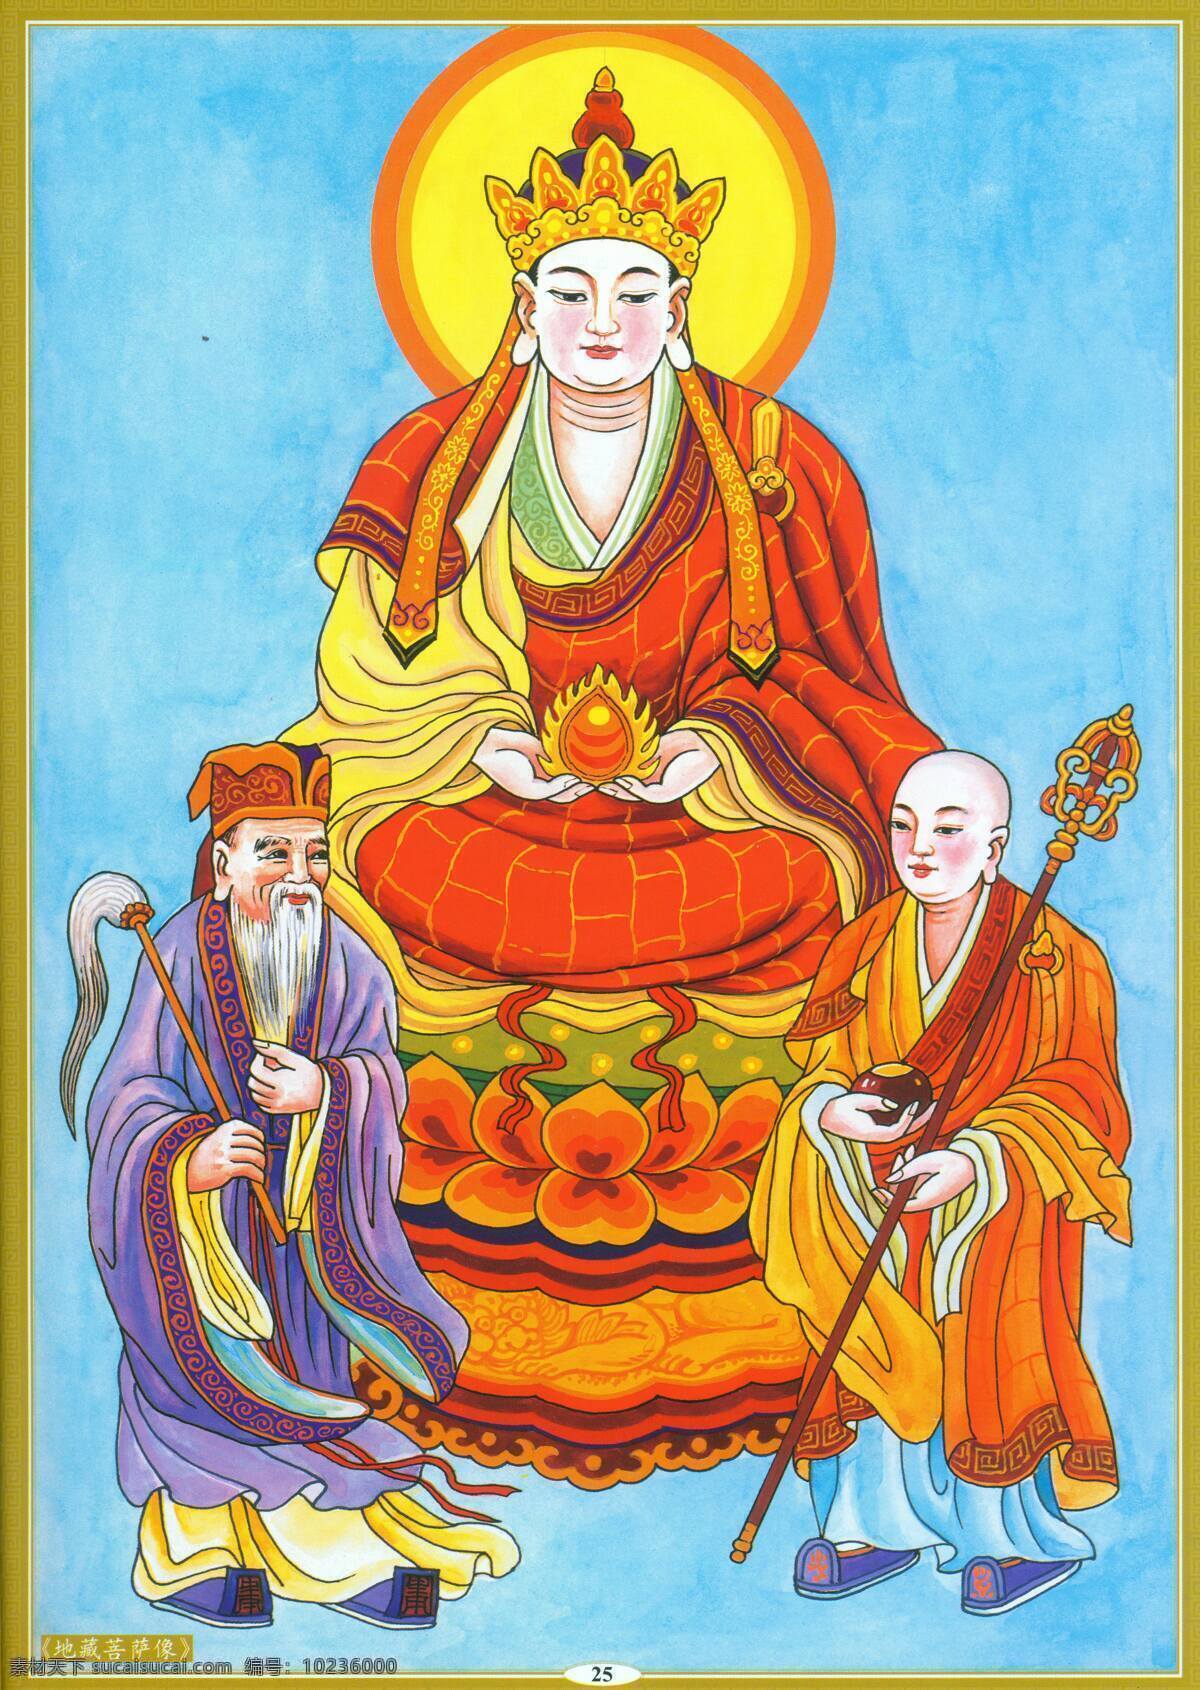 地藏菩萨像 设计素材 神仙佛像 中国画篇 书画美术 青色 天蓝色